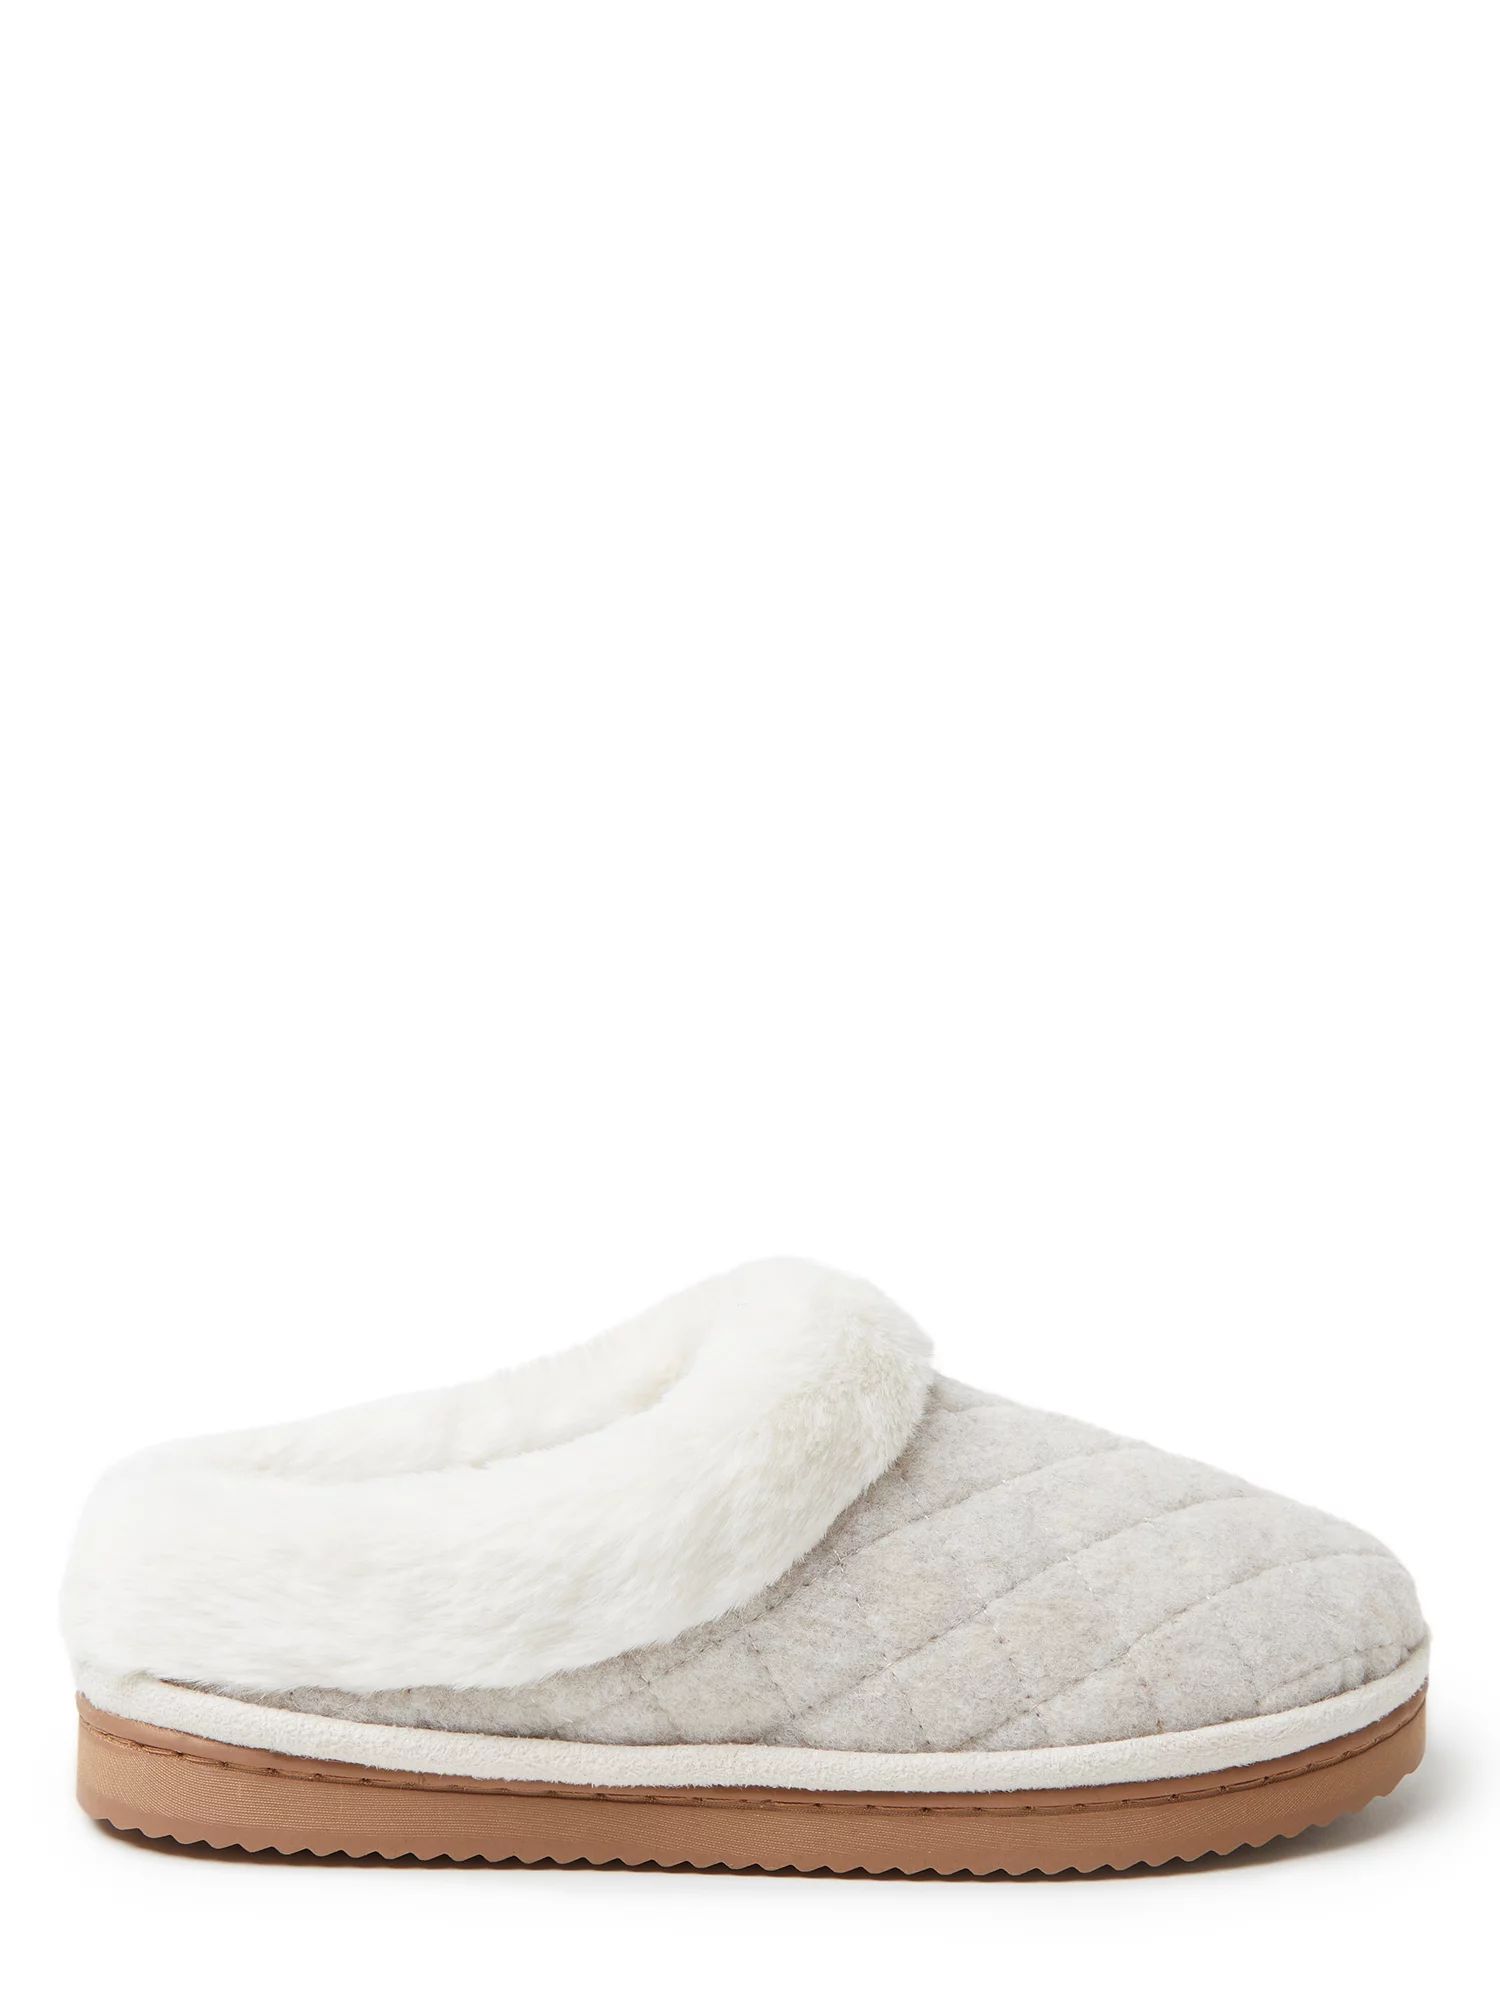 Dearfoams Cozy Comfort Wool Inspired Scuff Slippers (Women's) | Walmart (US)